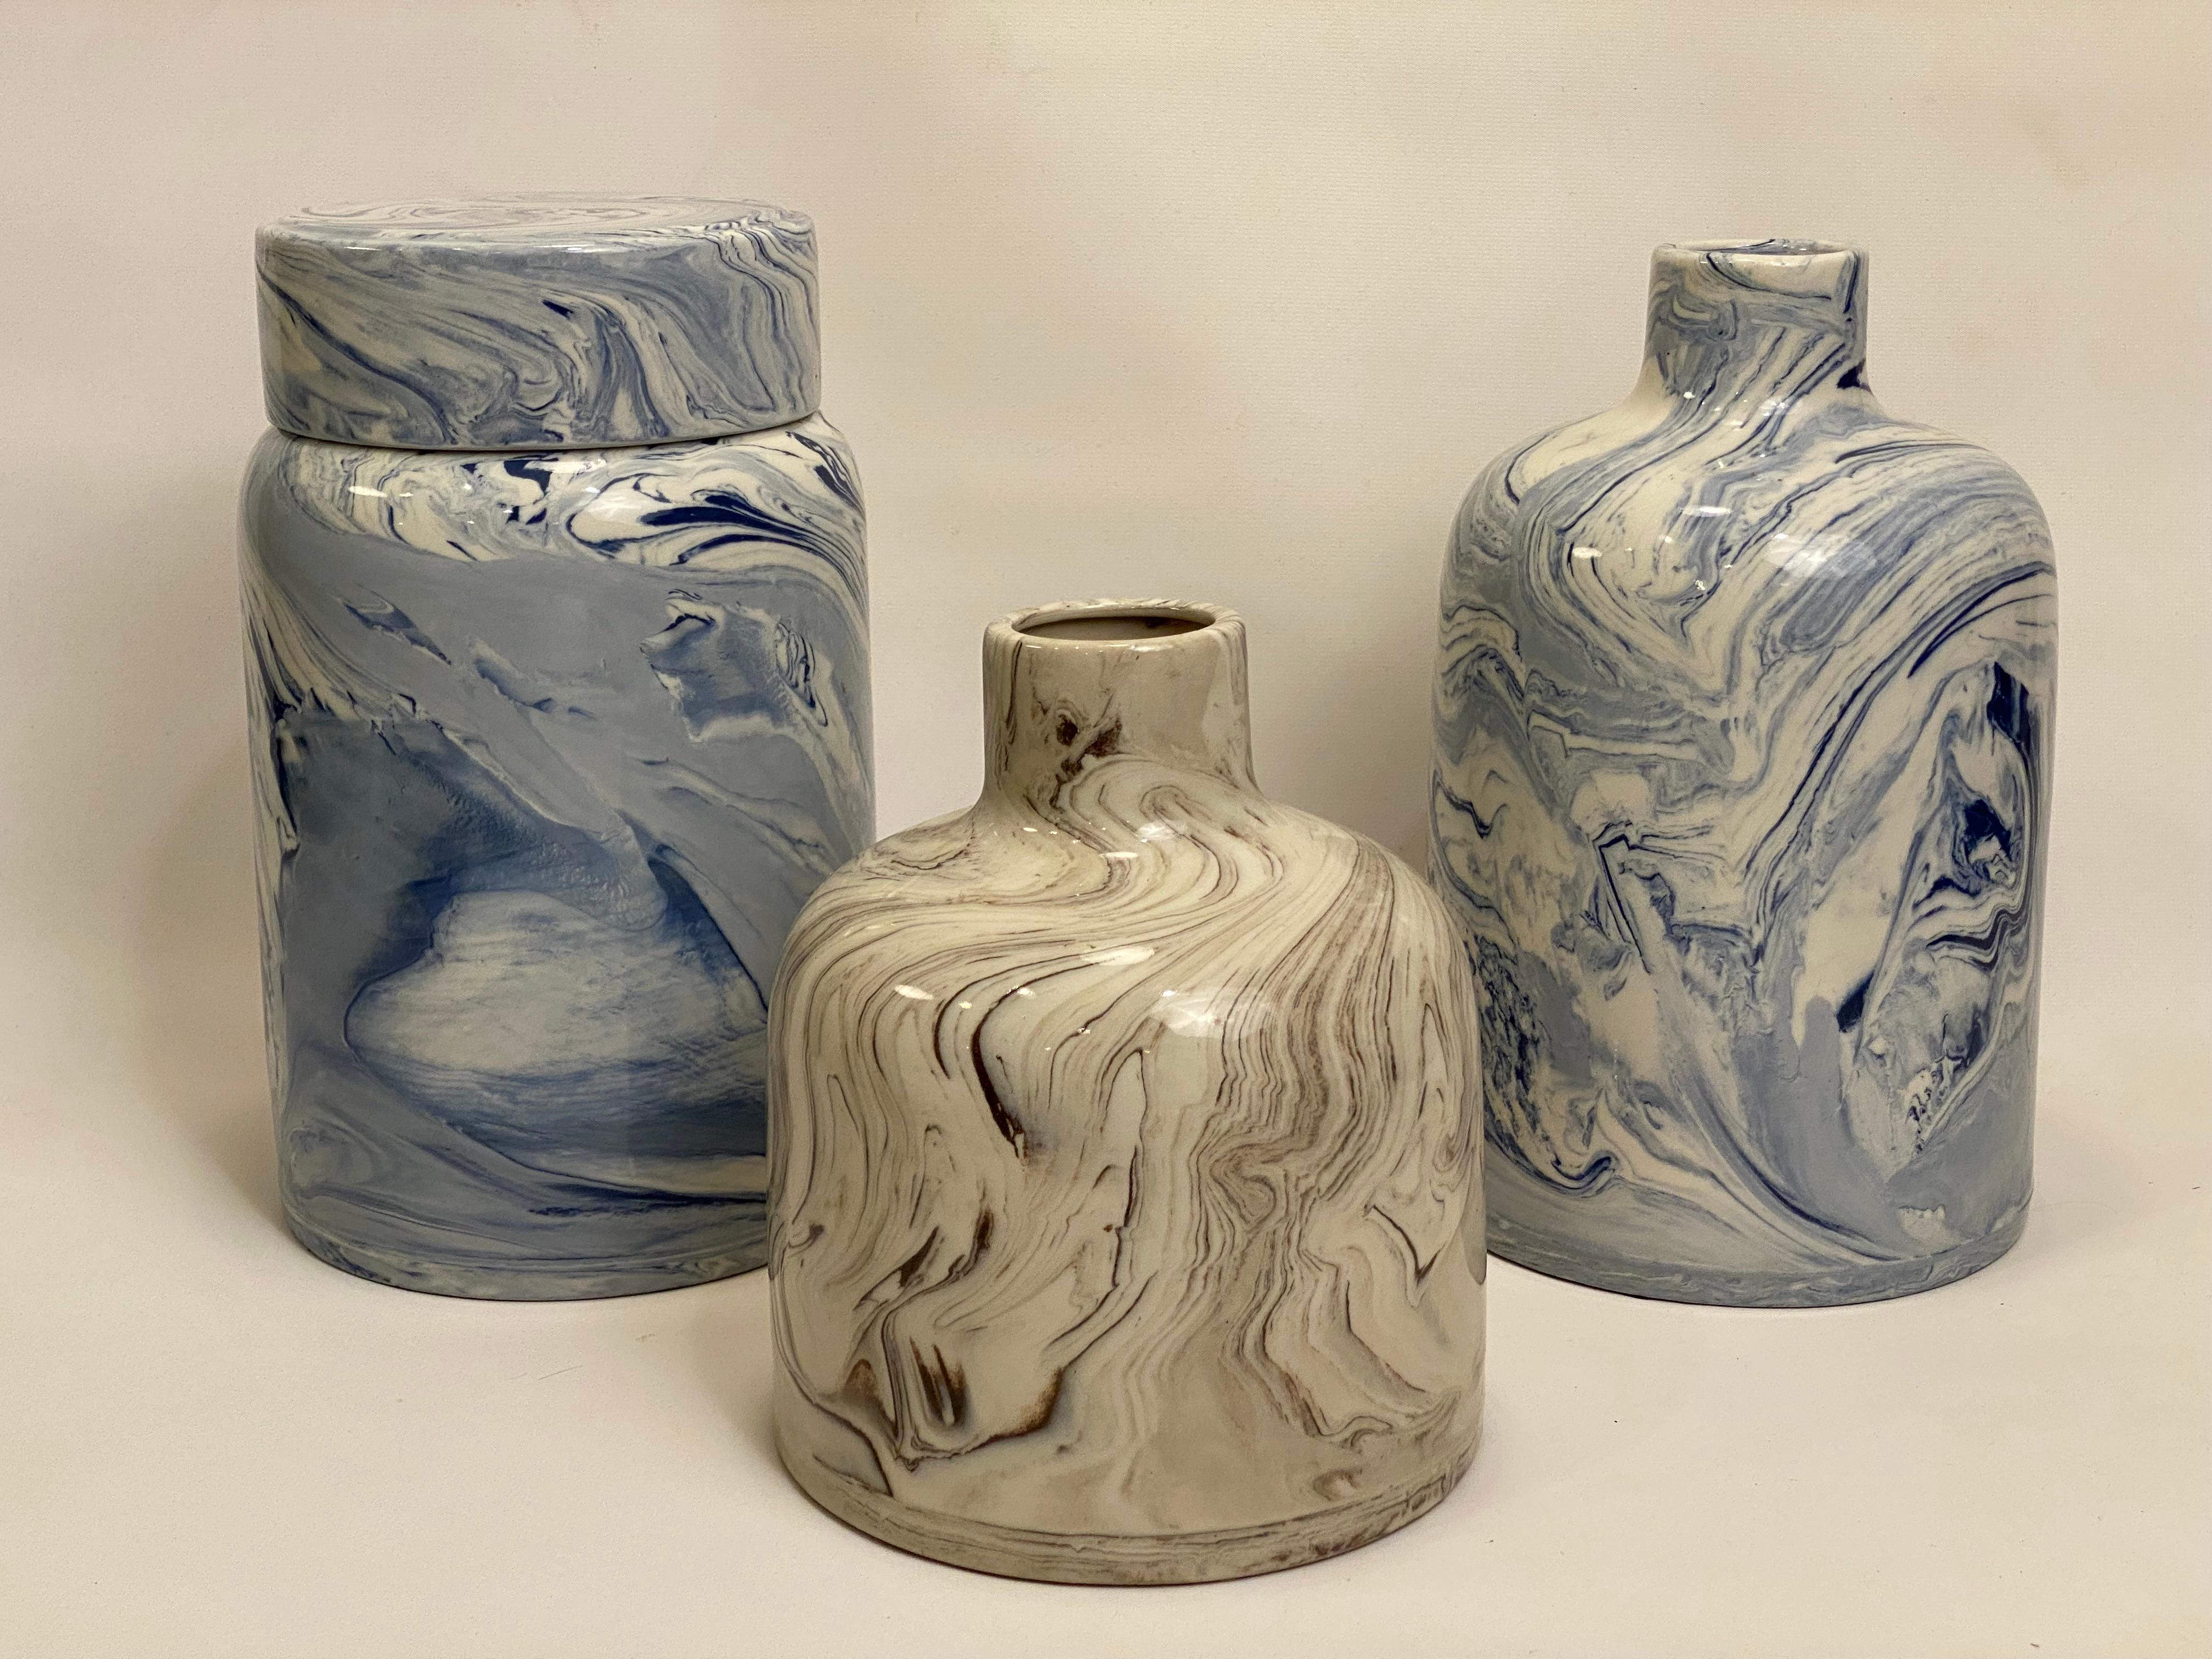 Eine Gruppe von drei marmorierten Keramikgefäßen. Diese Stücke bewahren die Kunst und Technik der alten türkischen Tradition des Marmorierens von Papier und anderen Oberflächen. CIRCA 1980-90. Auf der großen blauen Vase ist ein Teil des Labels